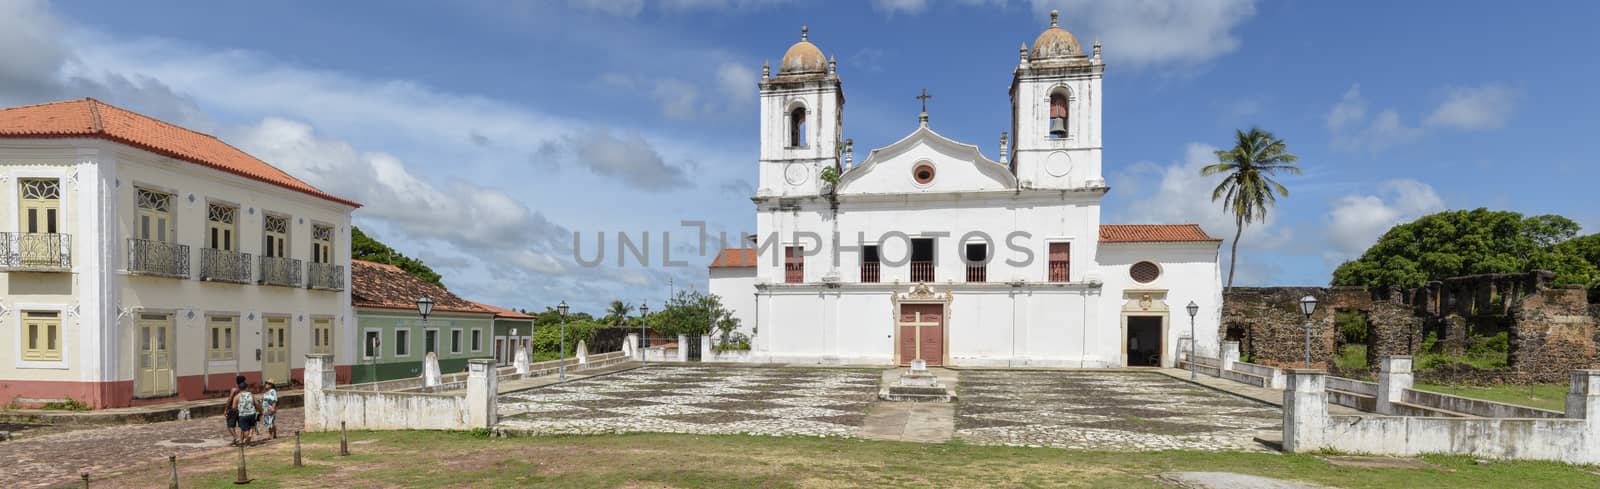 Nossa Senhora do Carmo church colonial architecture in Alcantara on Brazil